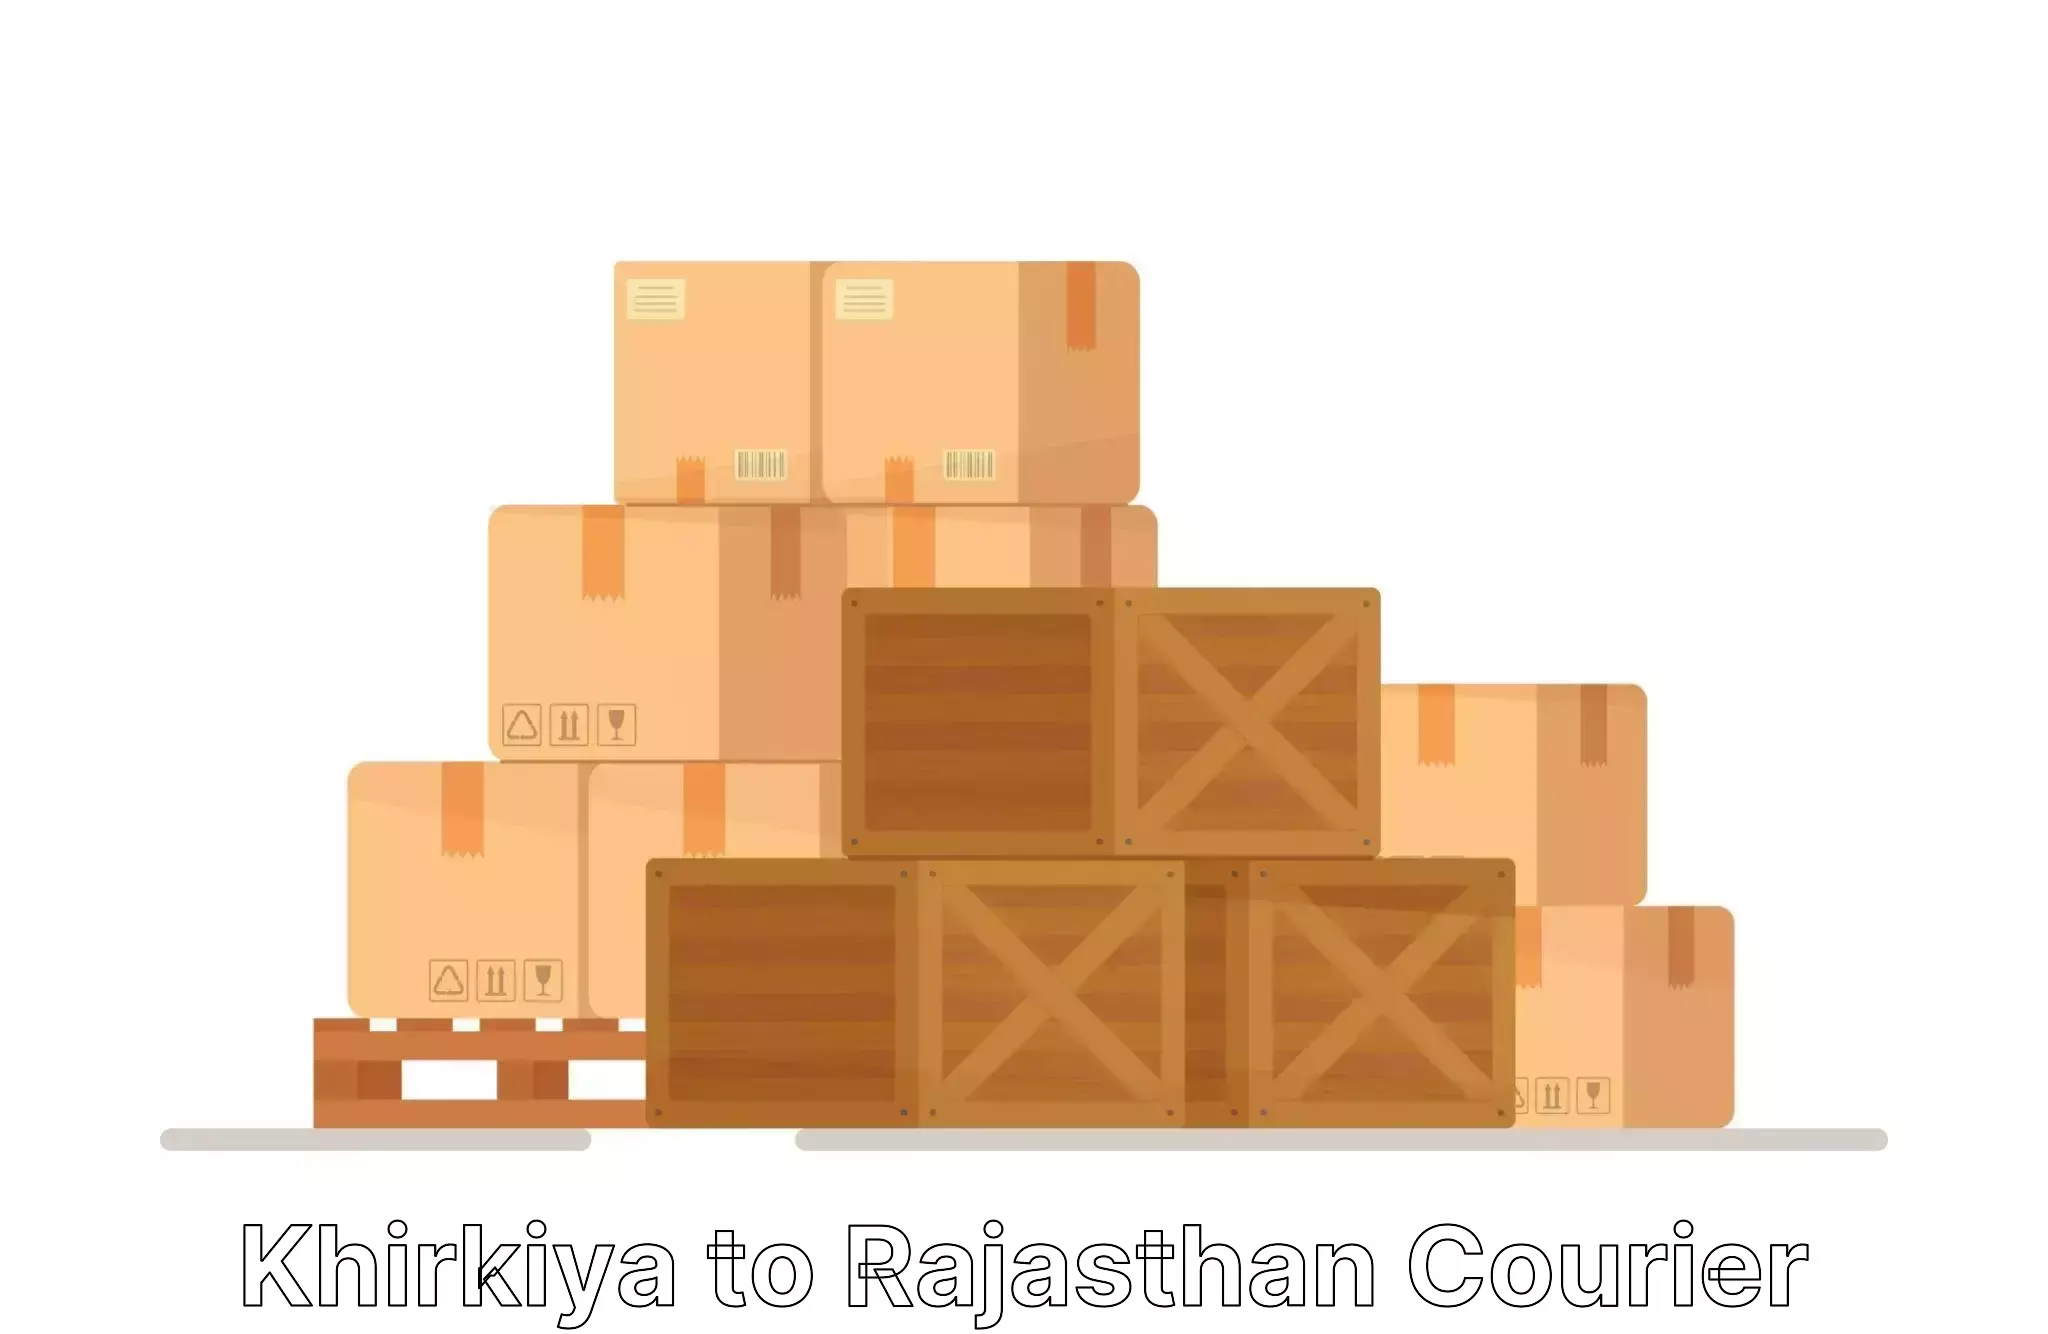 Home relocation experts Khirkiya to Malsisar